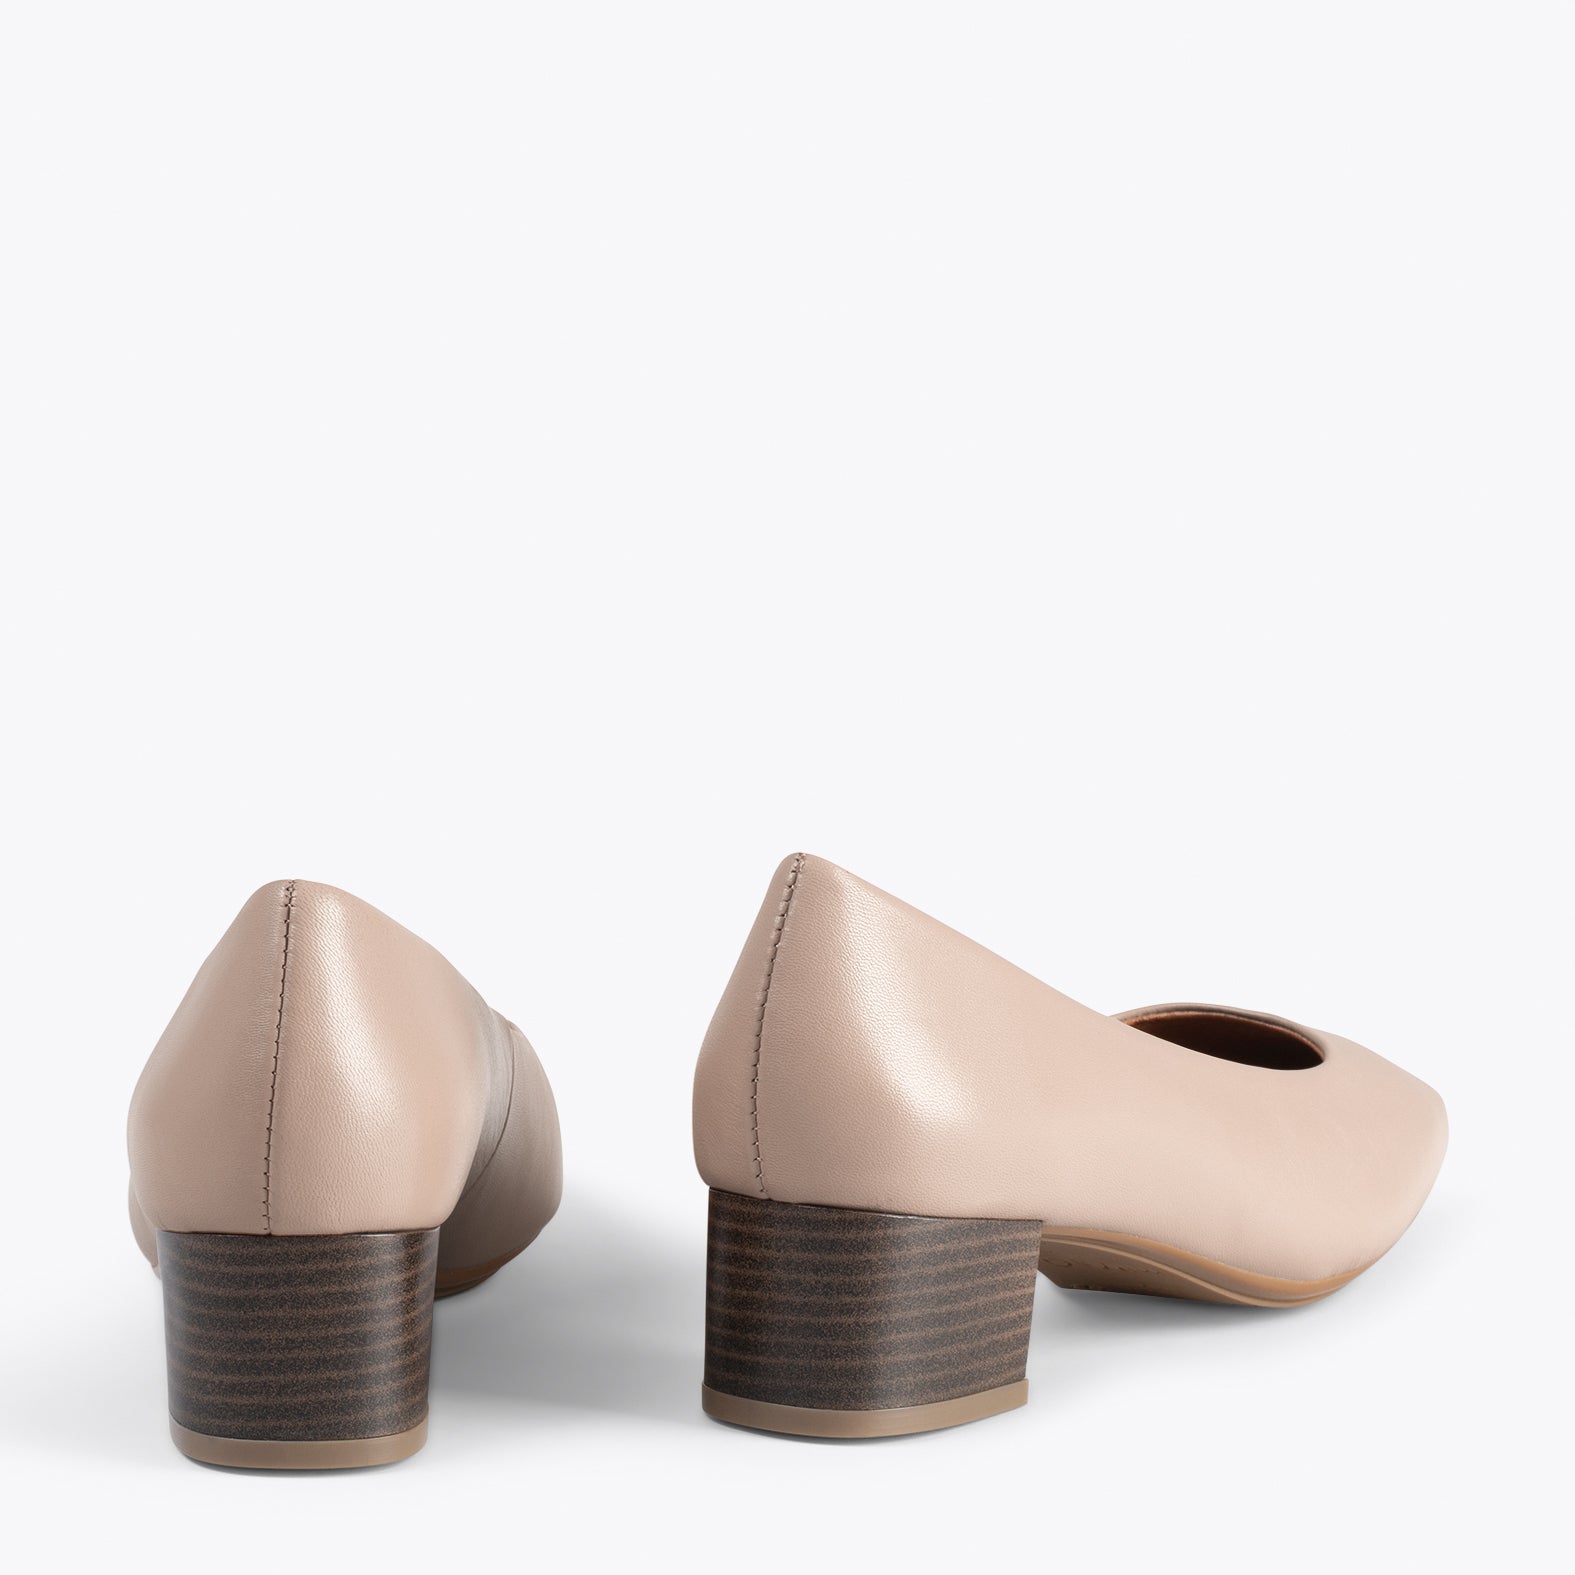 URBAN LADY – Chaussures à talon bas en cuir nappa TAUPE